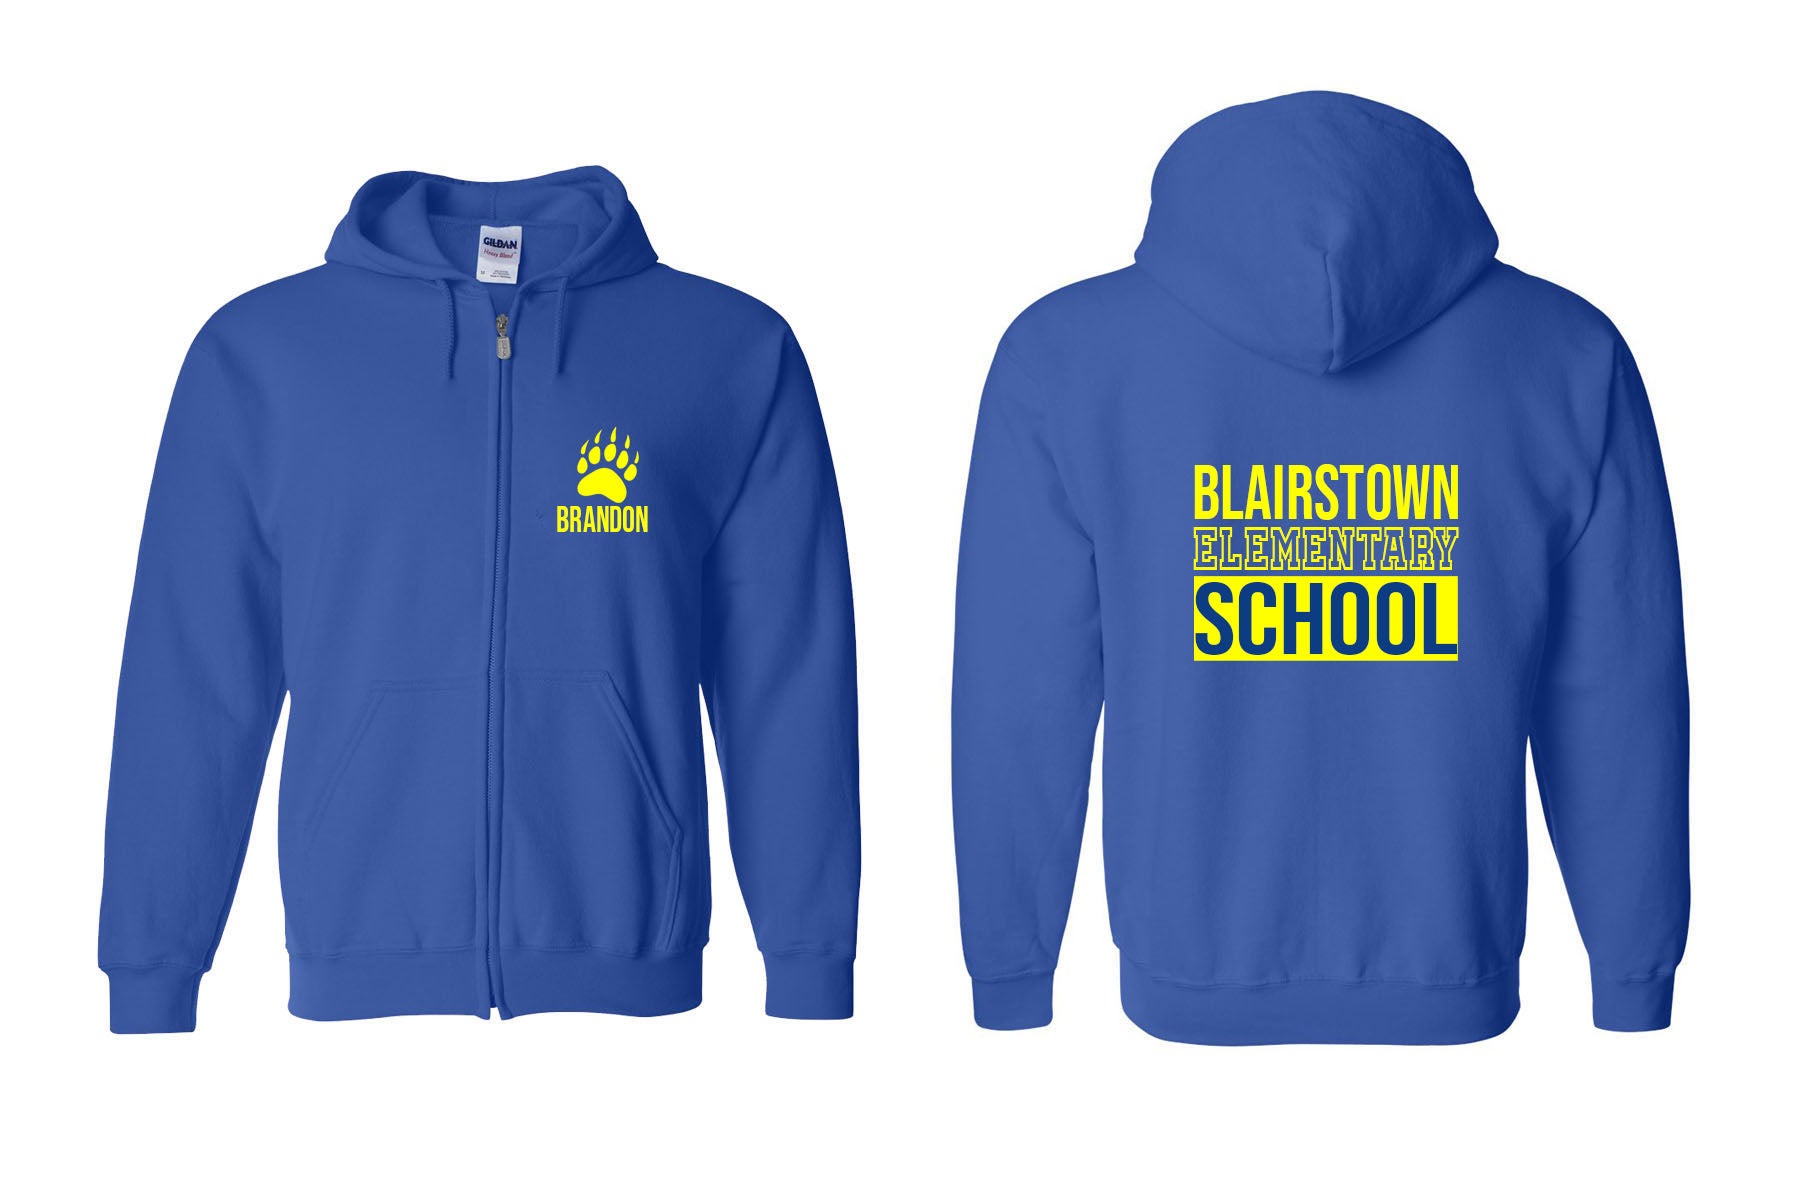 Blairstown Bears design 13 Zip up Sweatshirt